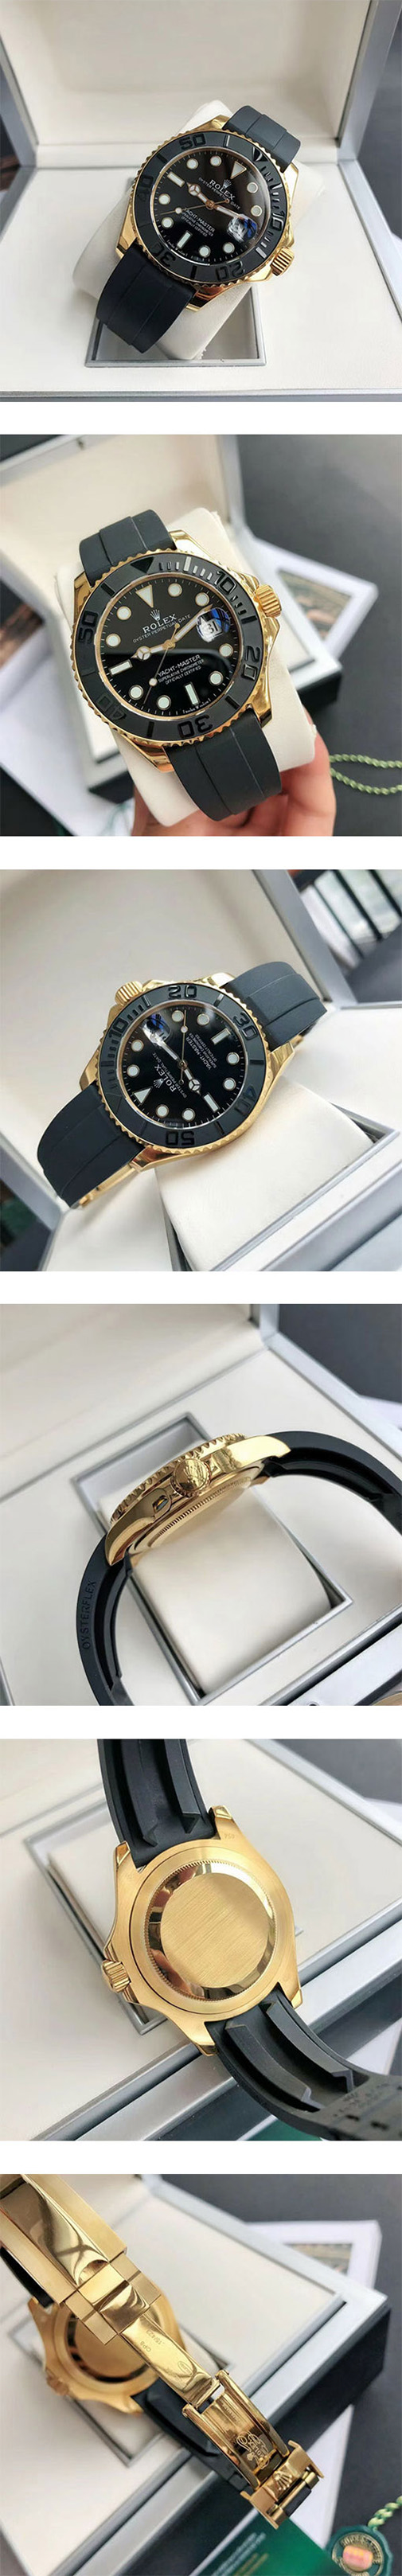 贈り物用ギフト【42mm】ヨットマスター226658コピー時計の紹介、自動巻き